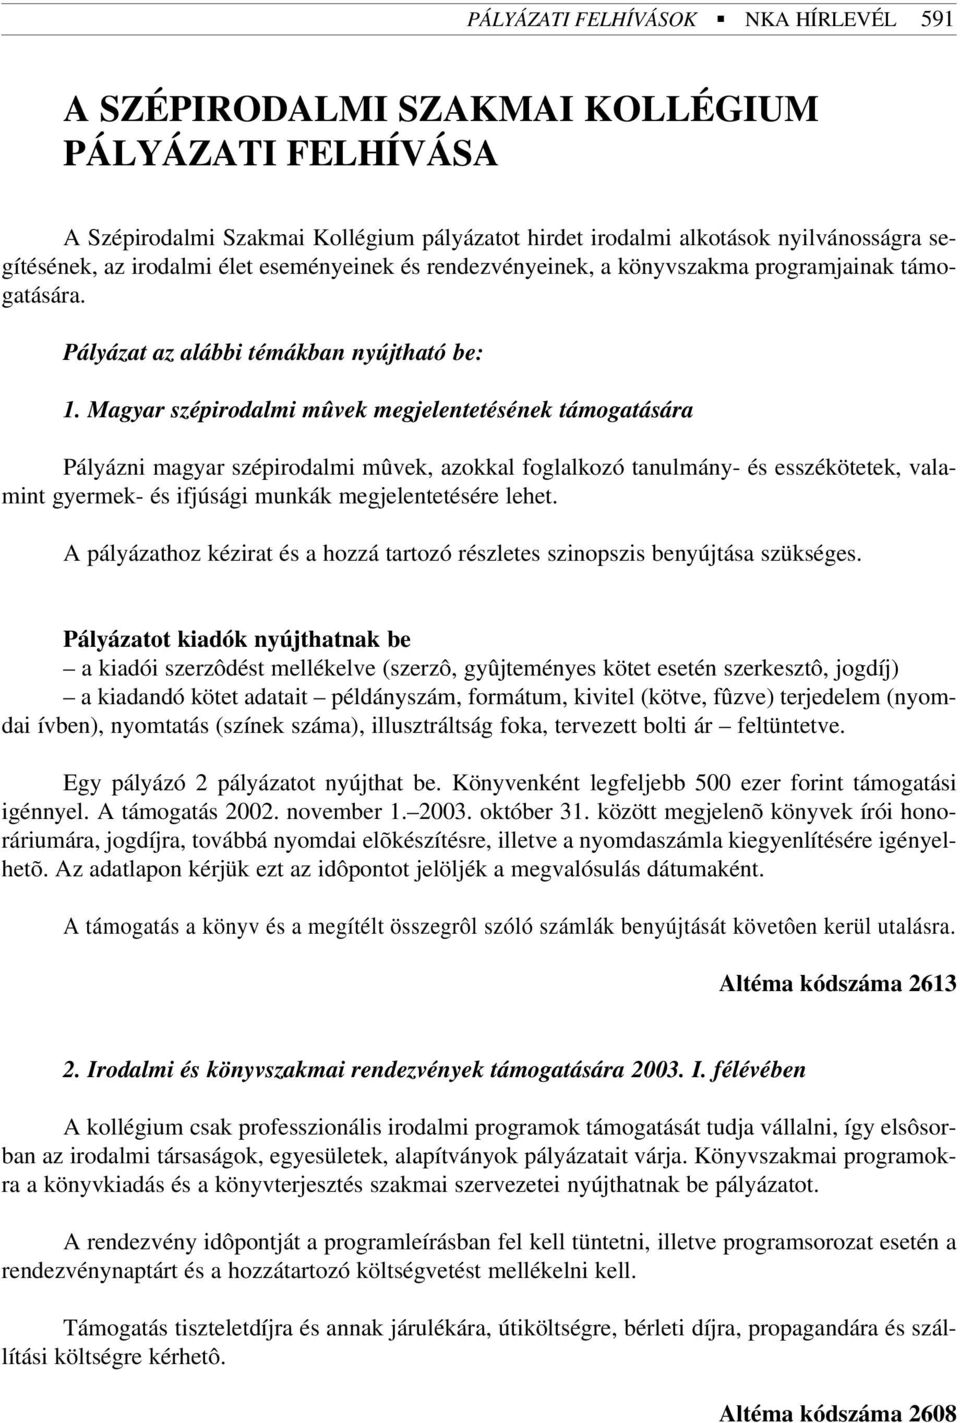 Magyar szépirodalmi mûvek megjelentetésének támogatására Pályázni magyar szépirodalmi mûvek, azokkal foglalkozó tanulmány- és esszékötetek, valamint gyermek- és ifjúsági munkák megjelentetésére lehet.